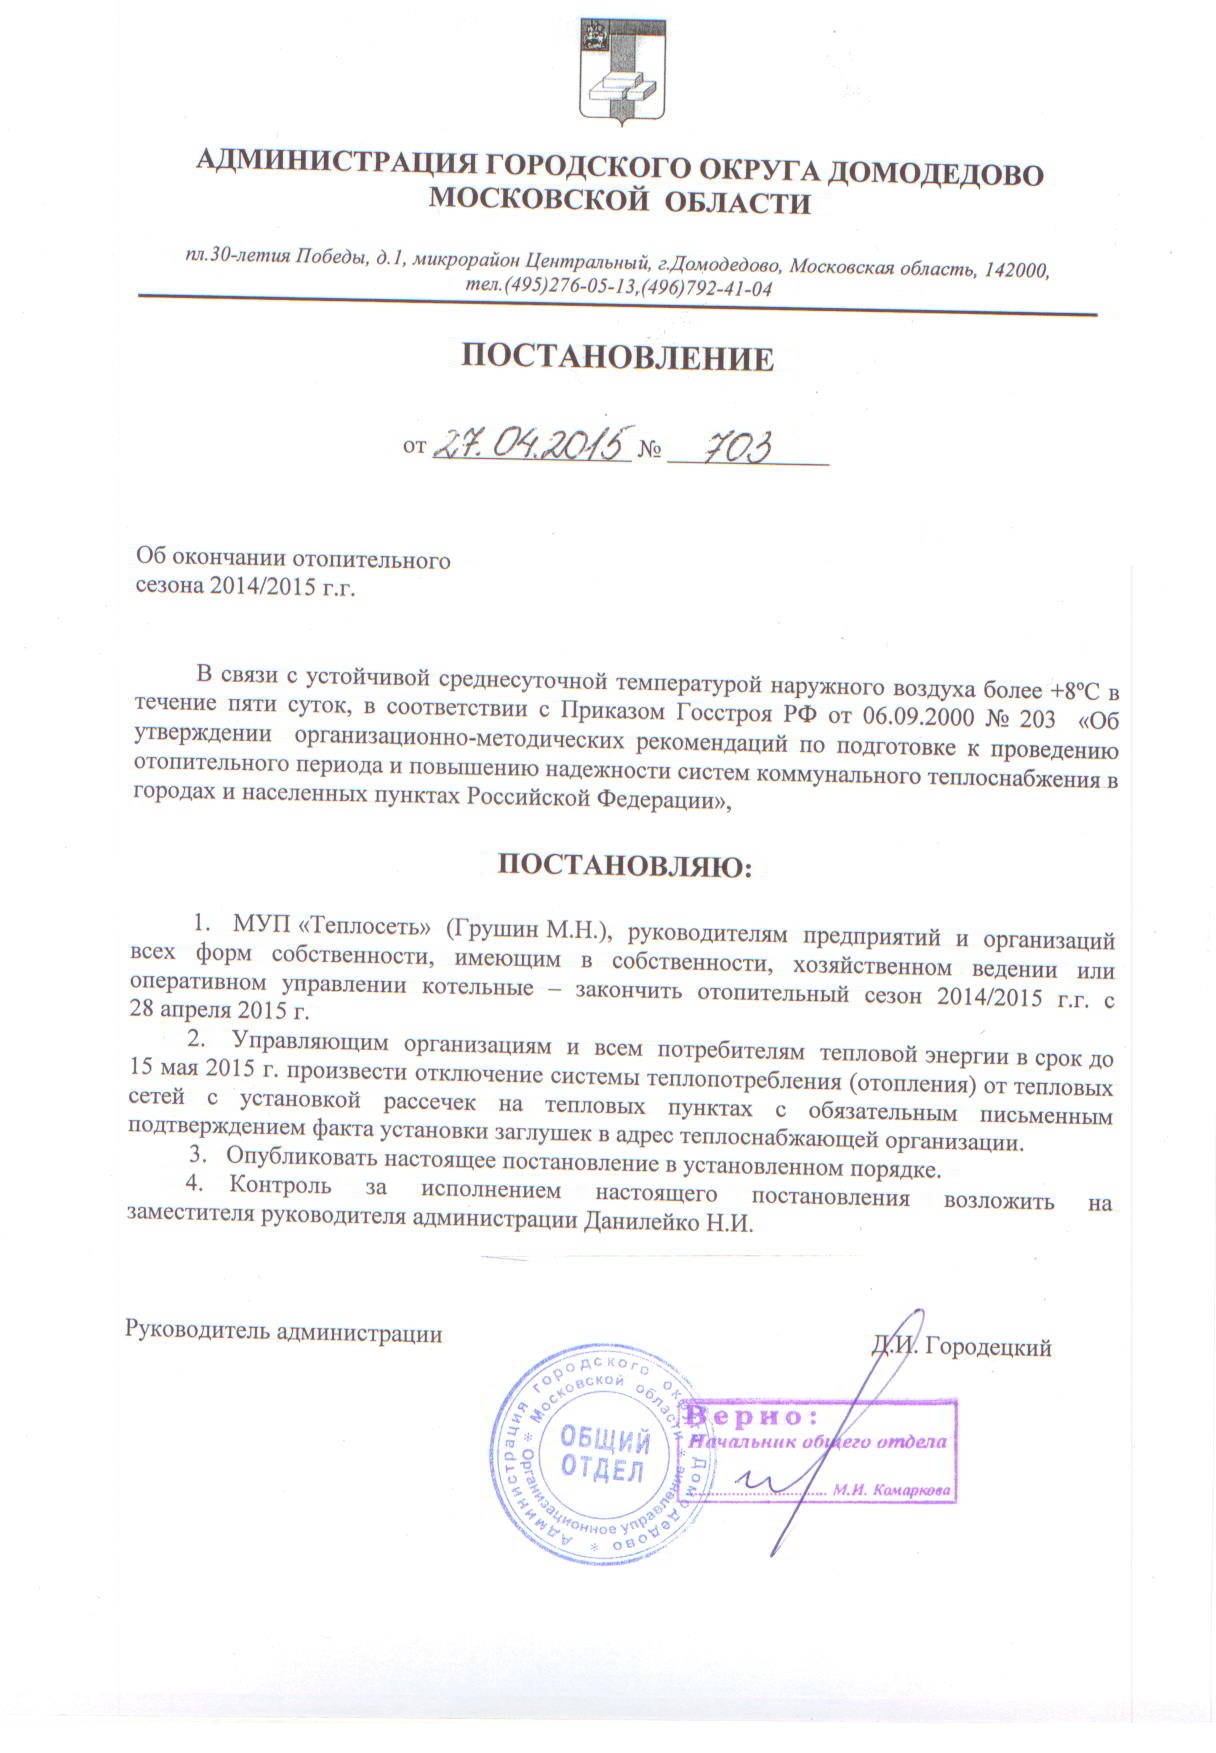 Постановление от 27.04.2015 №703 Об окончании отопительного сезона 2014-2015 г.